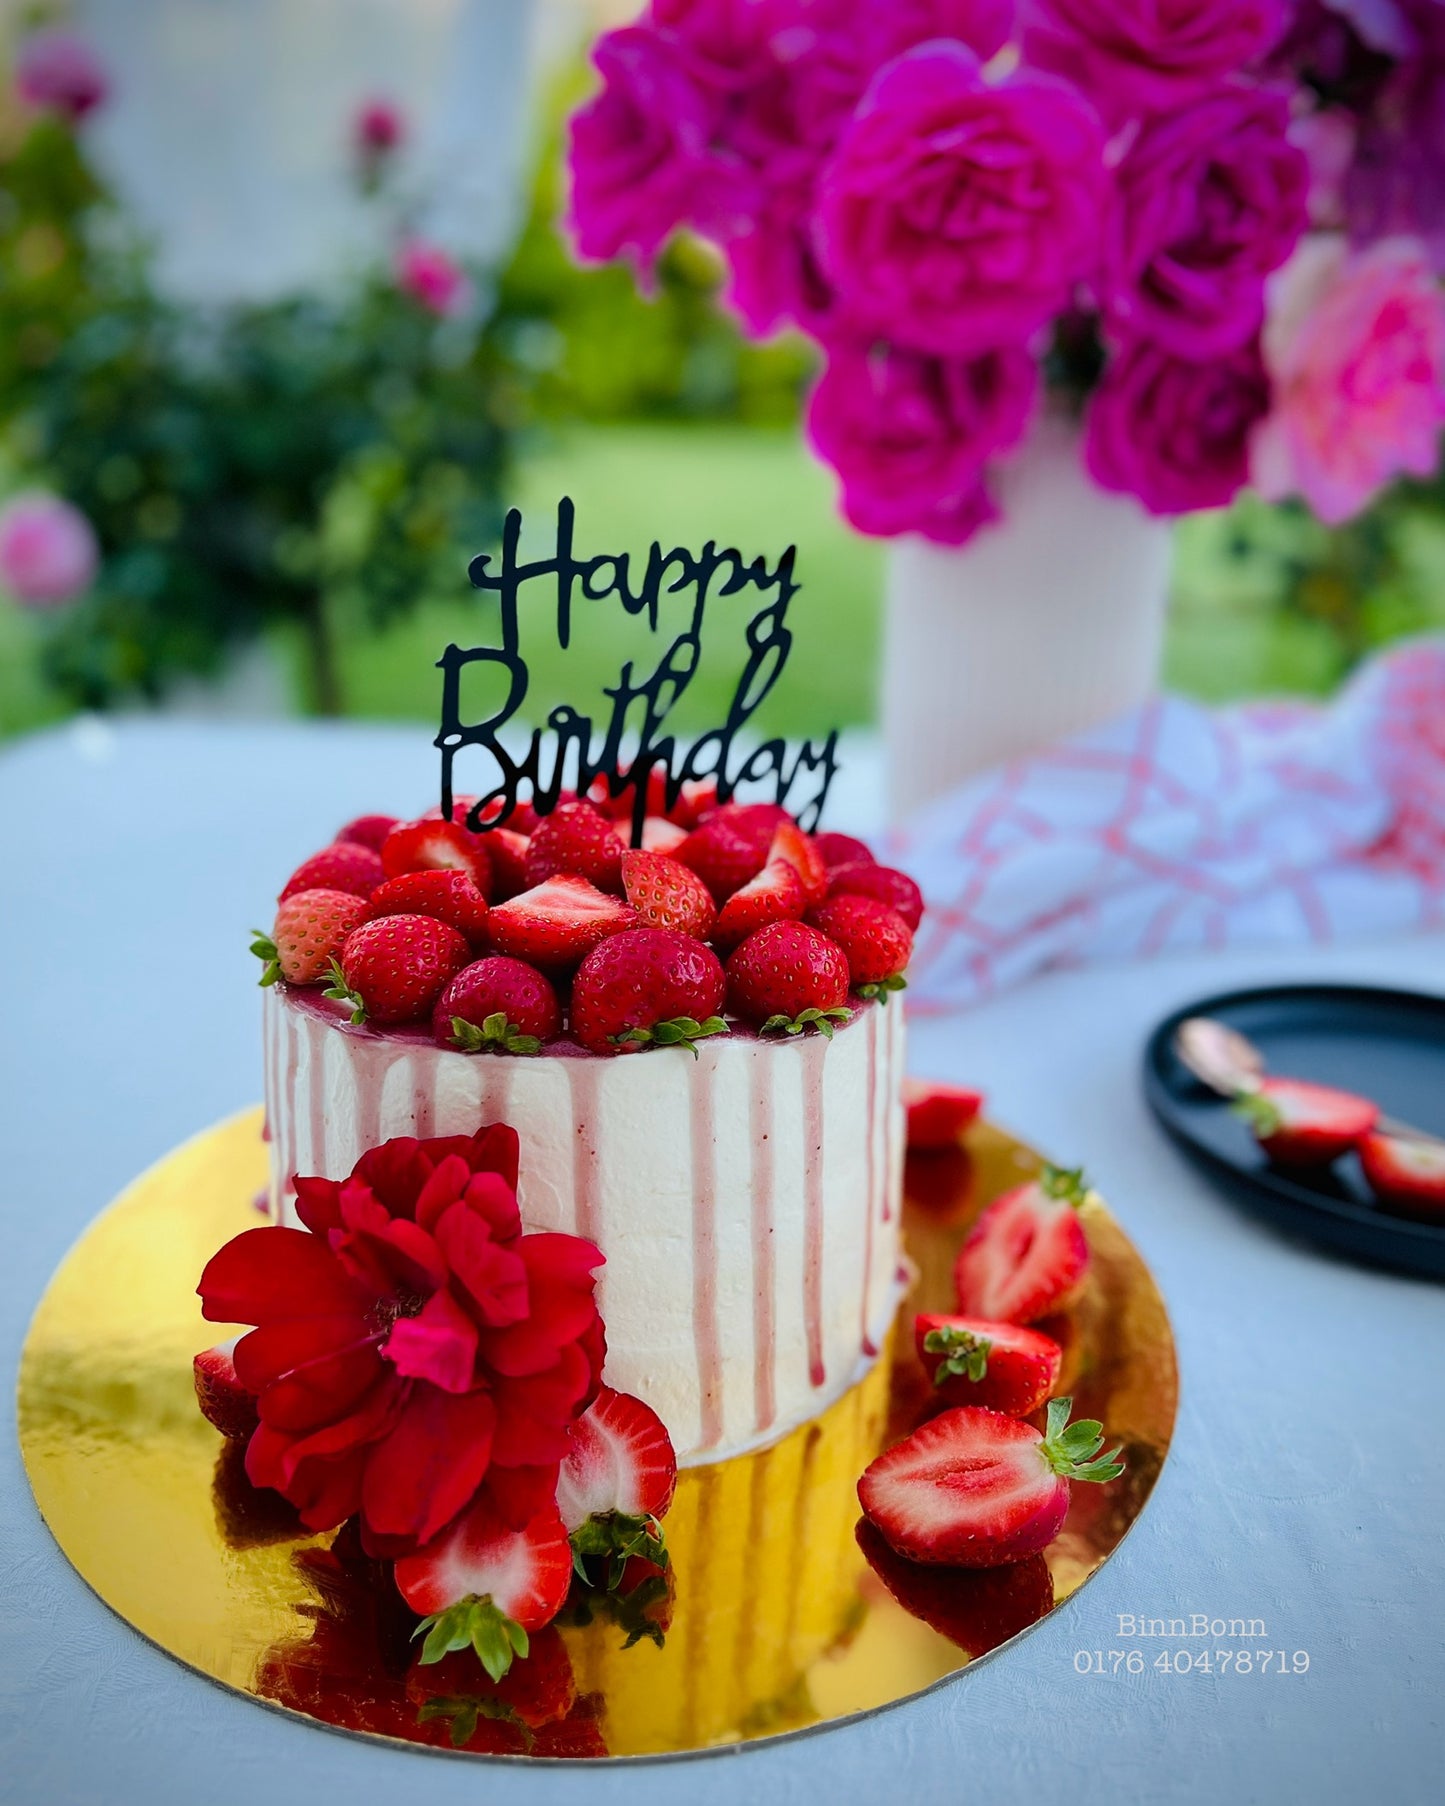 29. Torte "Balka" zum Geburtstag mit frischen Erdbeeren 22 cm